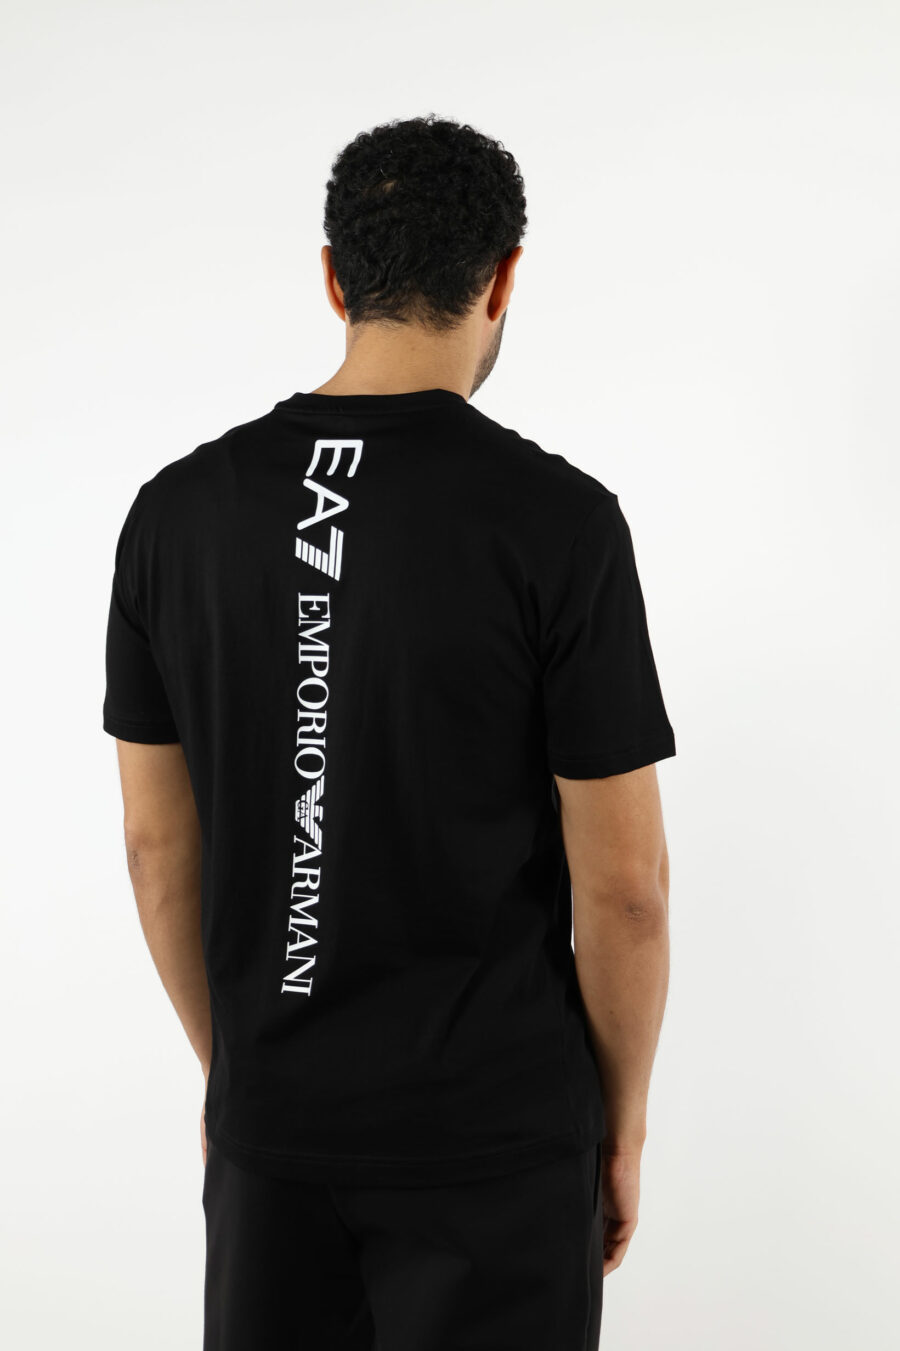 T-shirt preta com maxilogo vertical "lux identity" nas costas - 110887